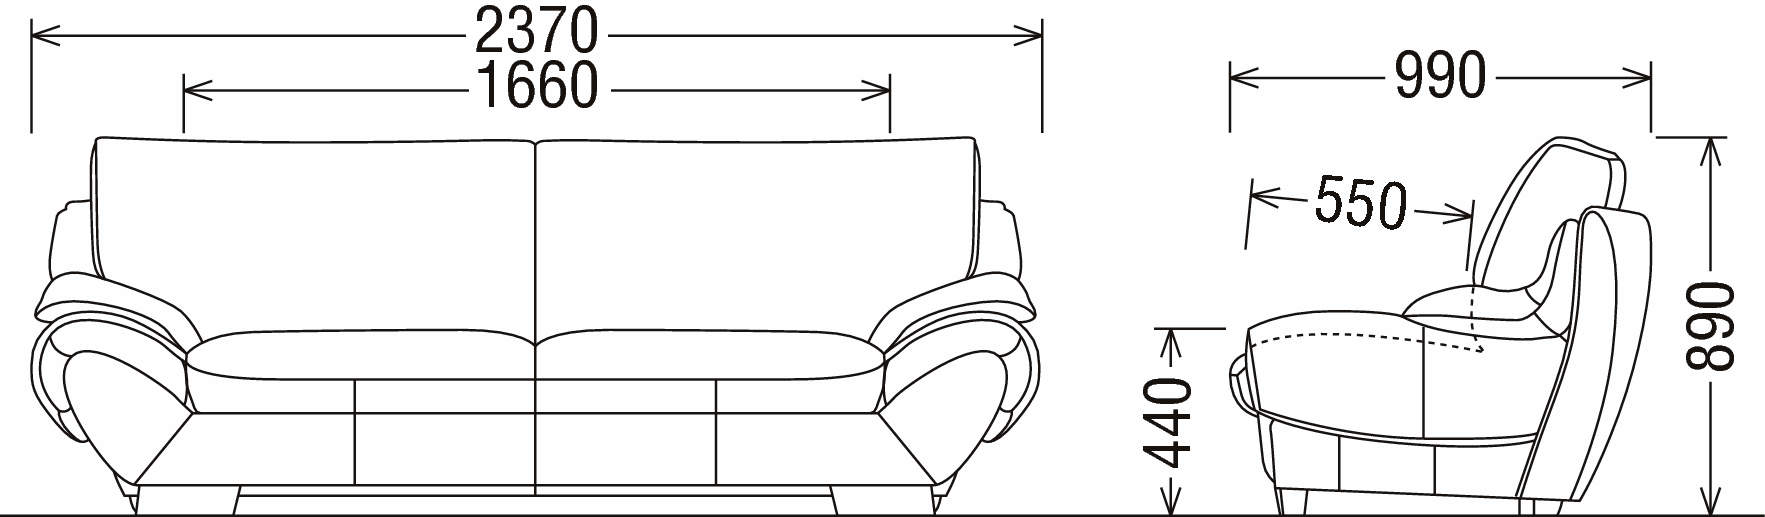 長椅子ロング ZS9713WK | ソファー | 家具を探す | カリモク家具 karimoku